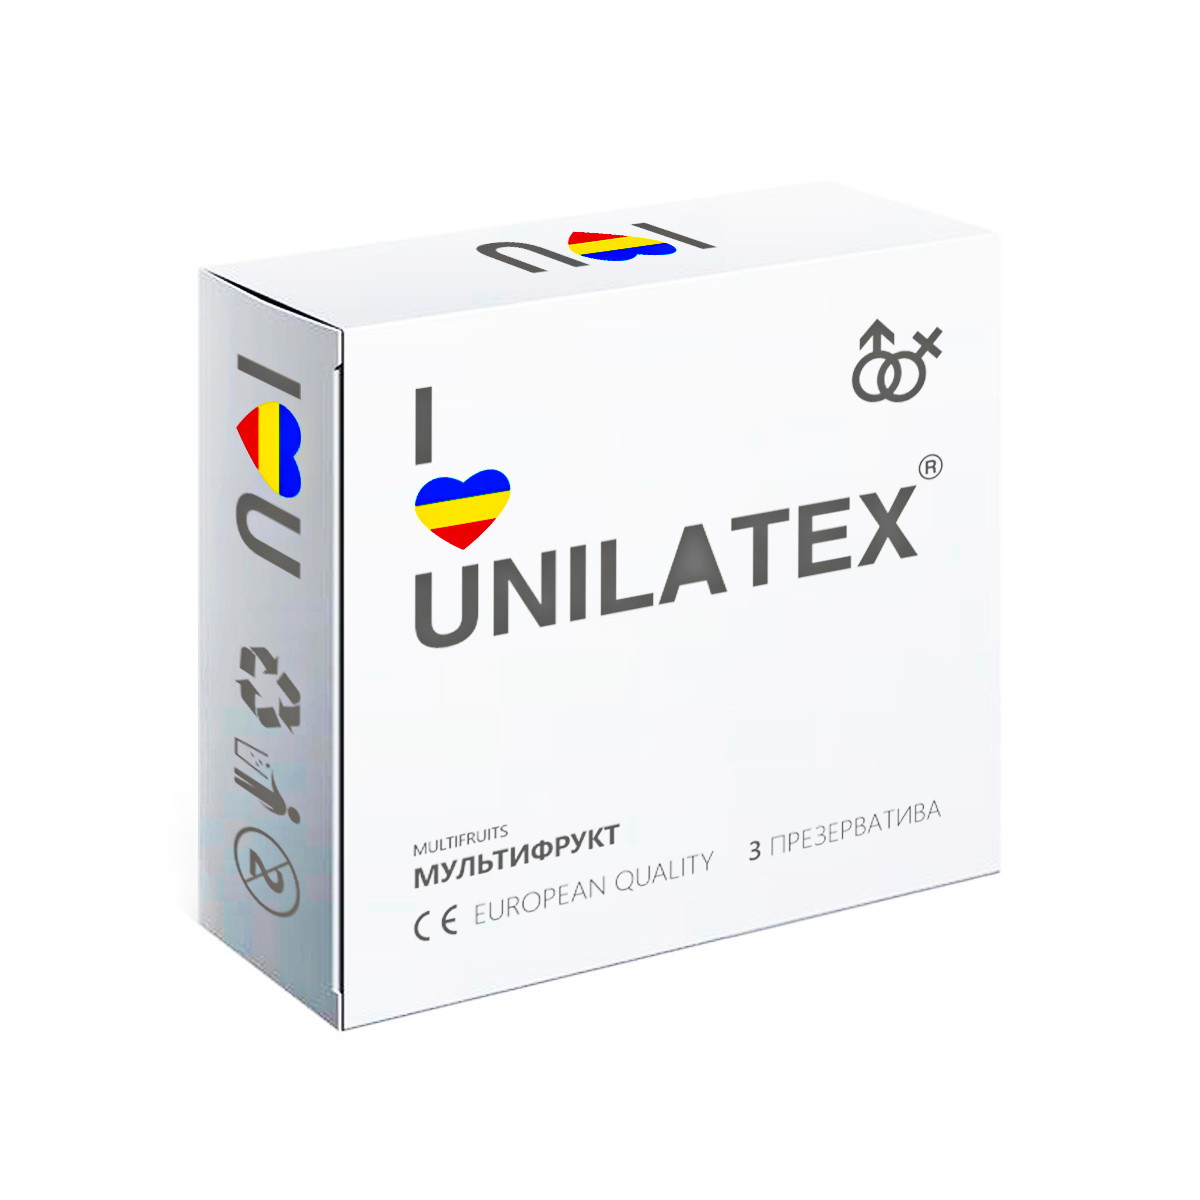 Цветные презервативы "Unilatex Multifruits" цветные ароматизированные, 3 штуки